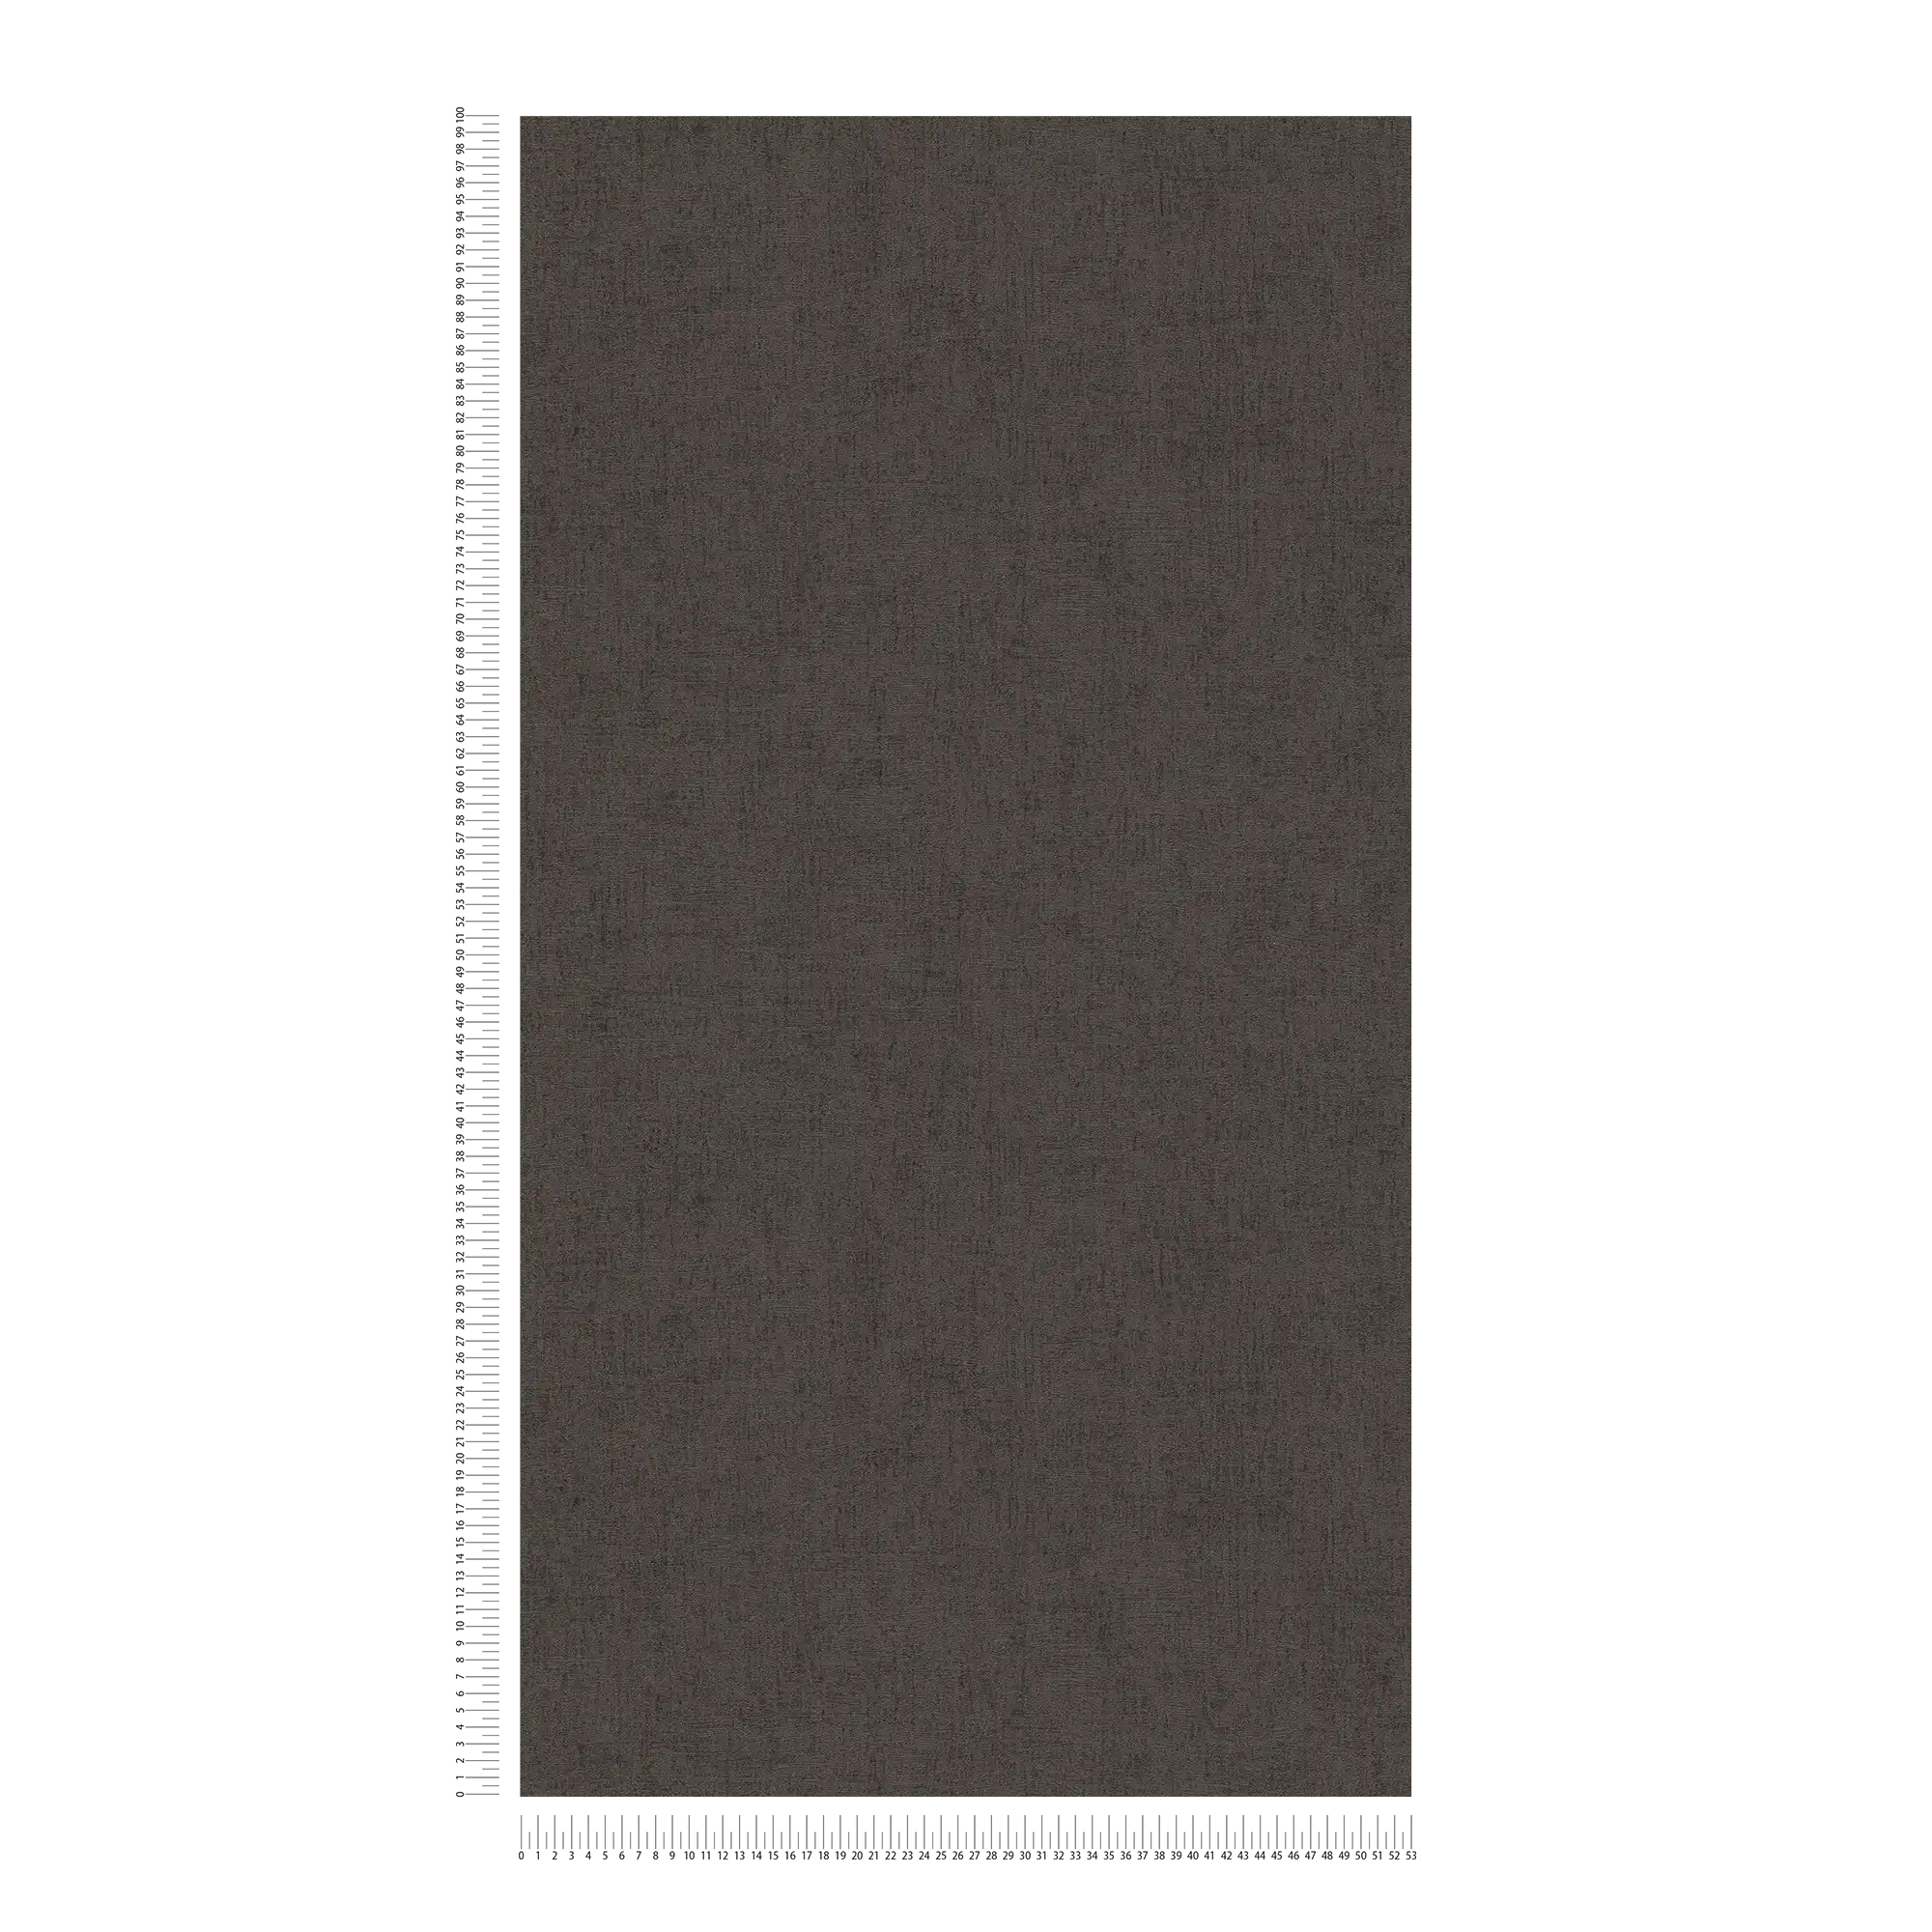             papel pintado marrón oscuro con brillo y efecto metálico - marrón, metálico
        